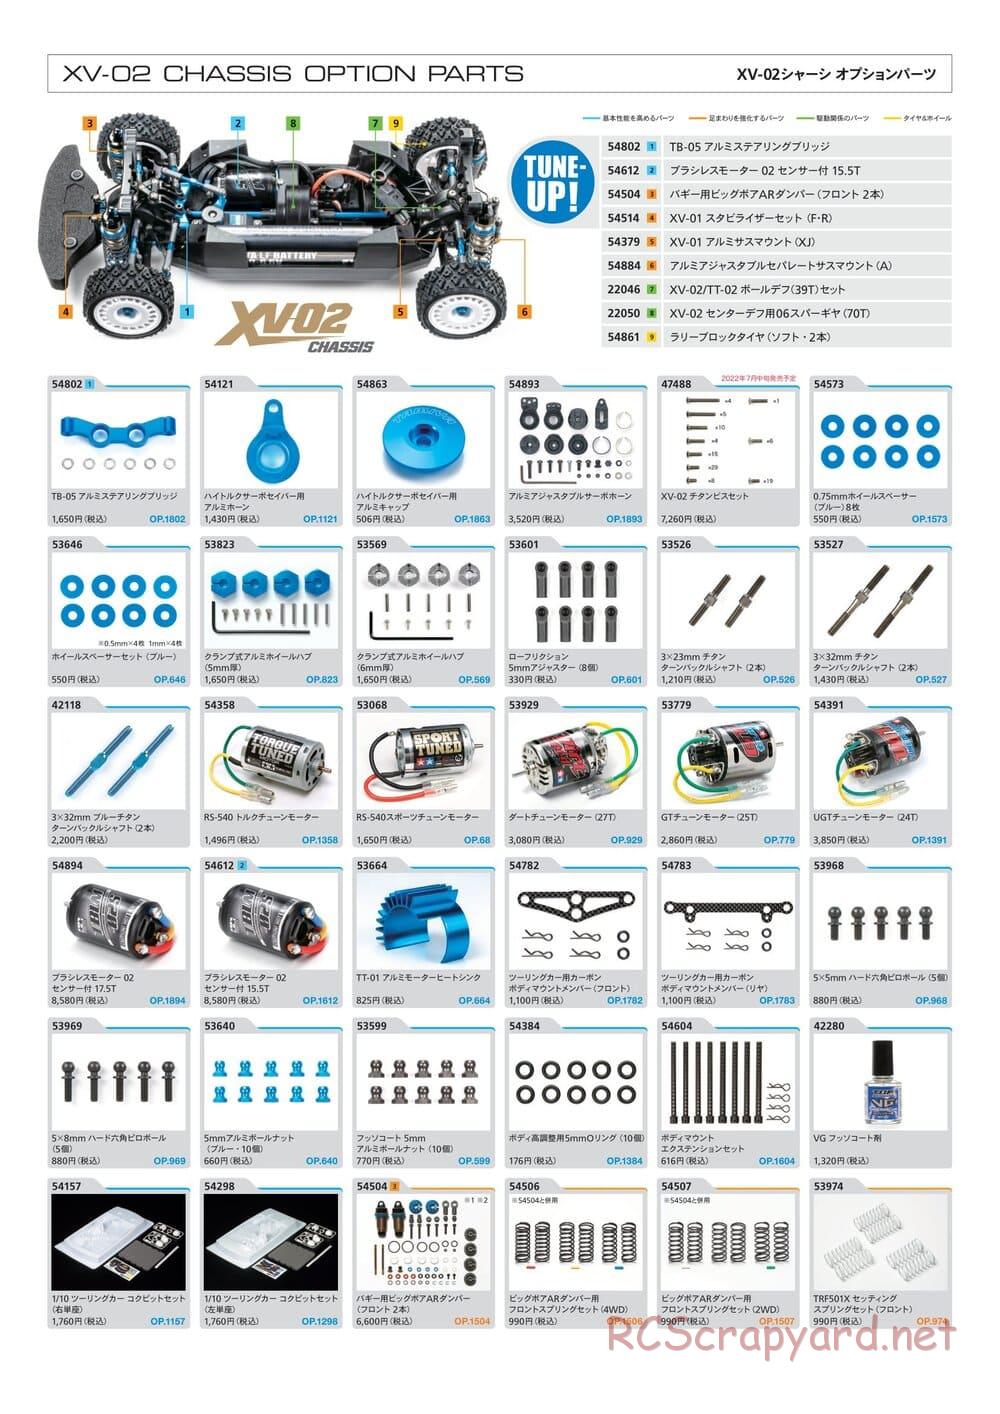 Tamiya - XV-02 Pro Chassis - Manual - Page 1